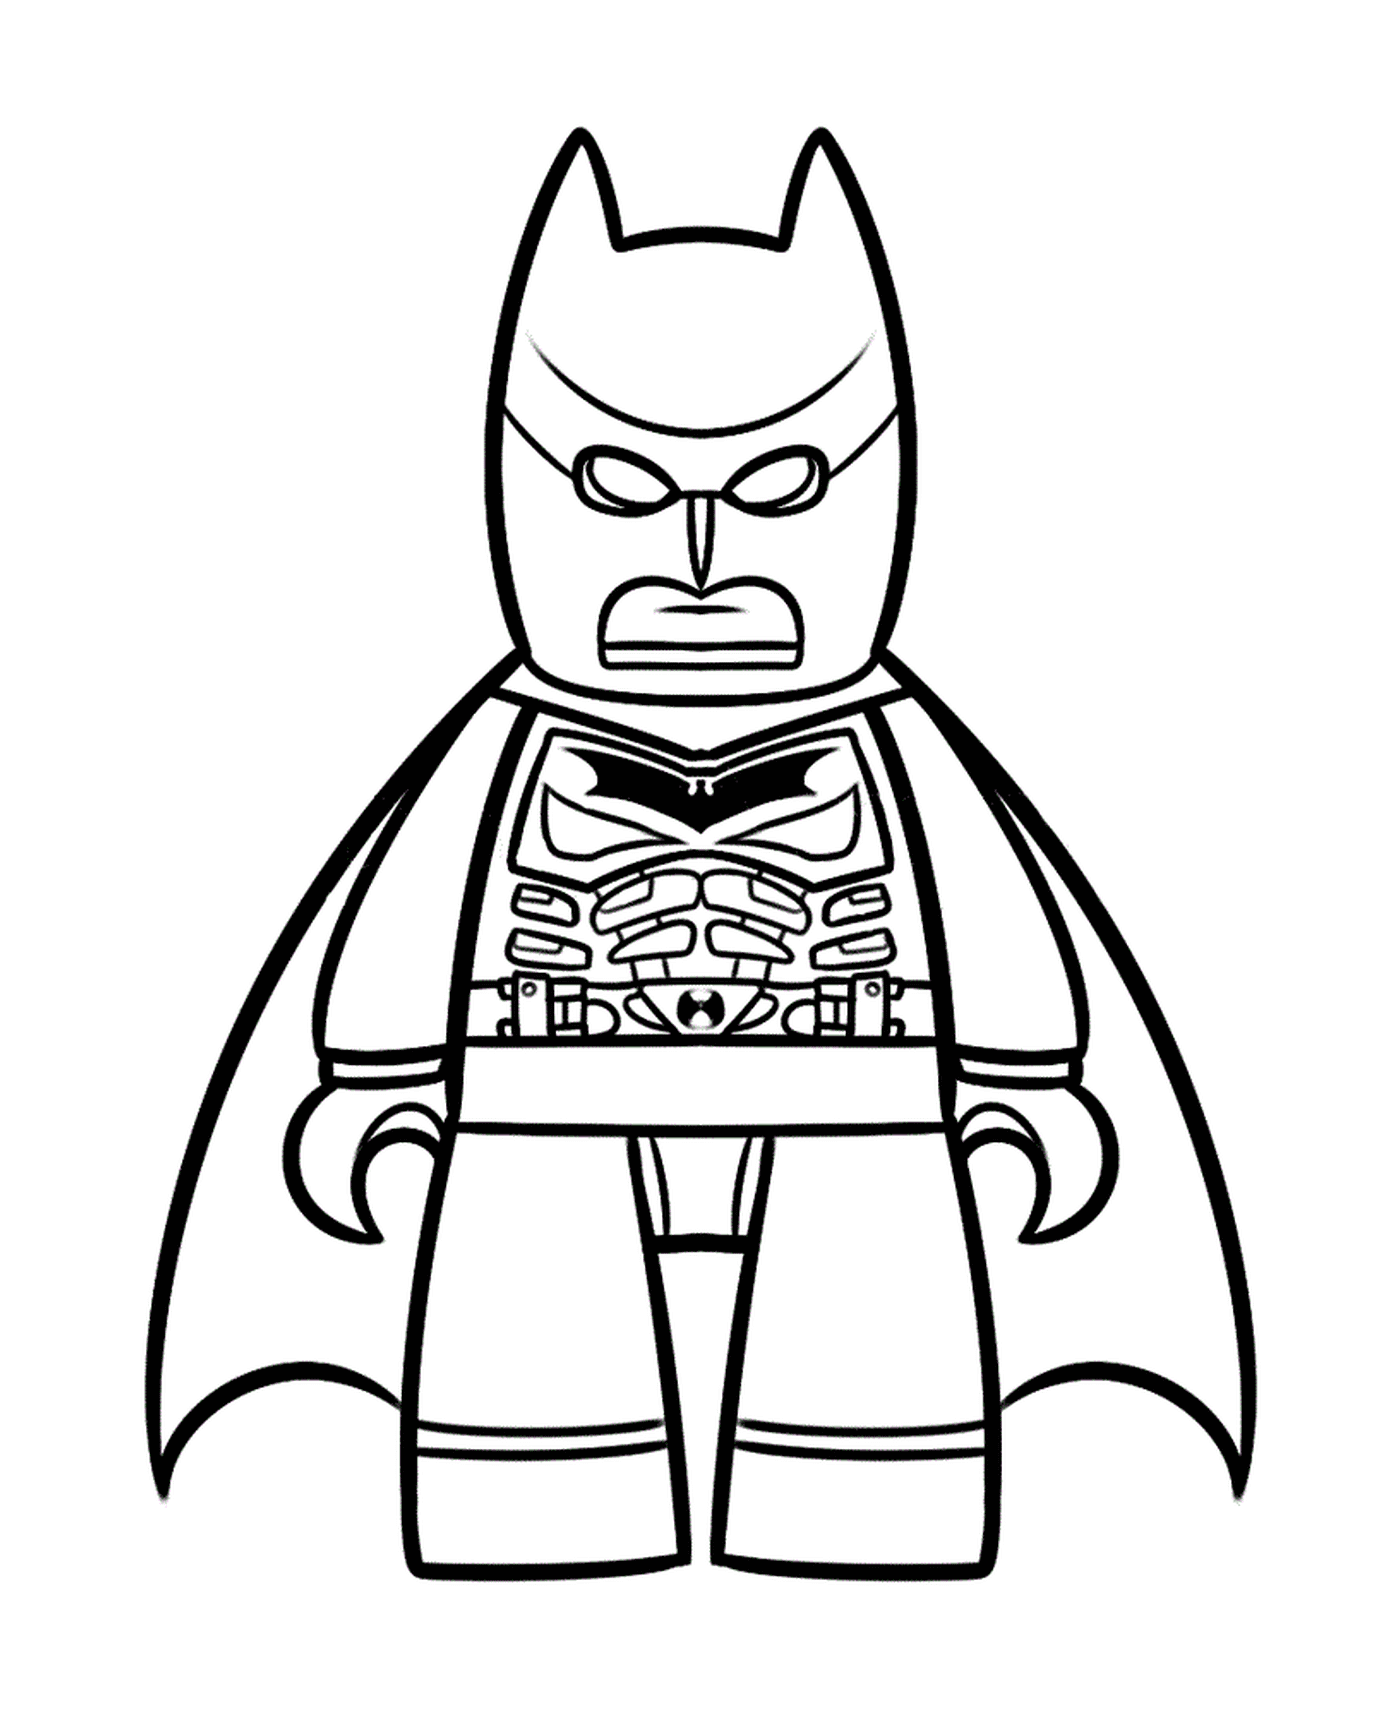  愤怒的蝙蝠侠Lego 